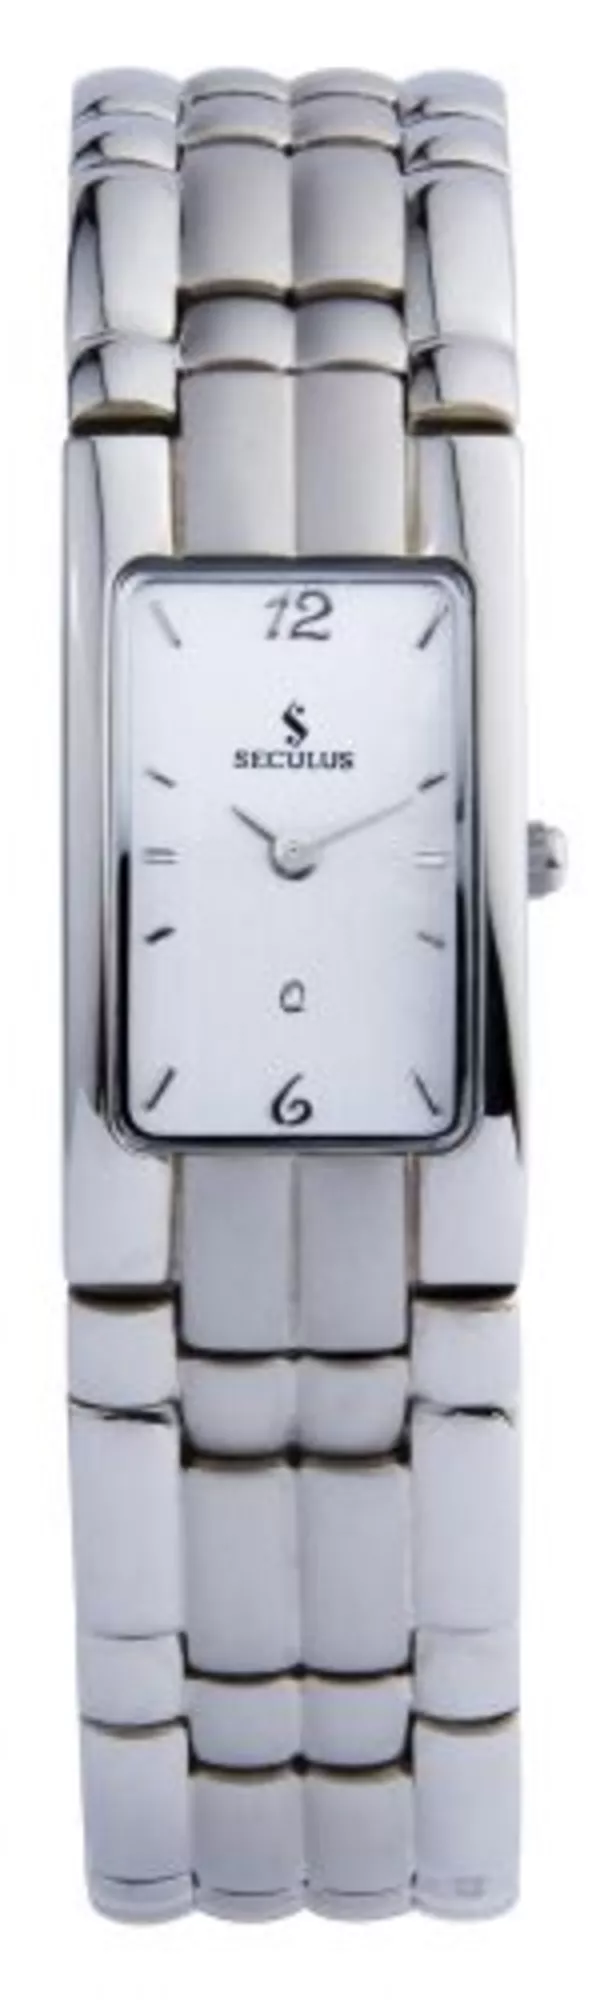 Часы Seculus 1388.1.751 pnp,silver